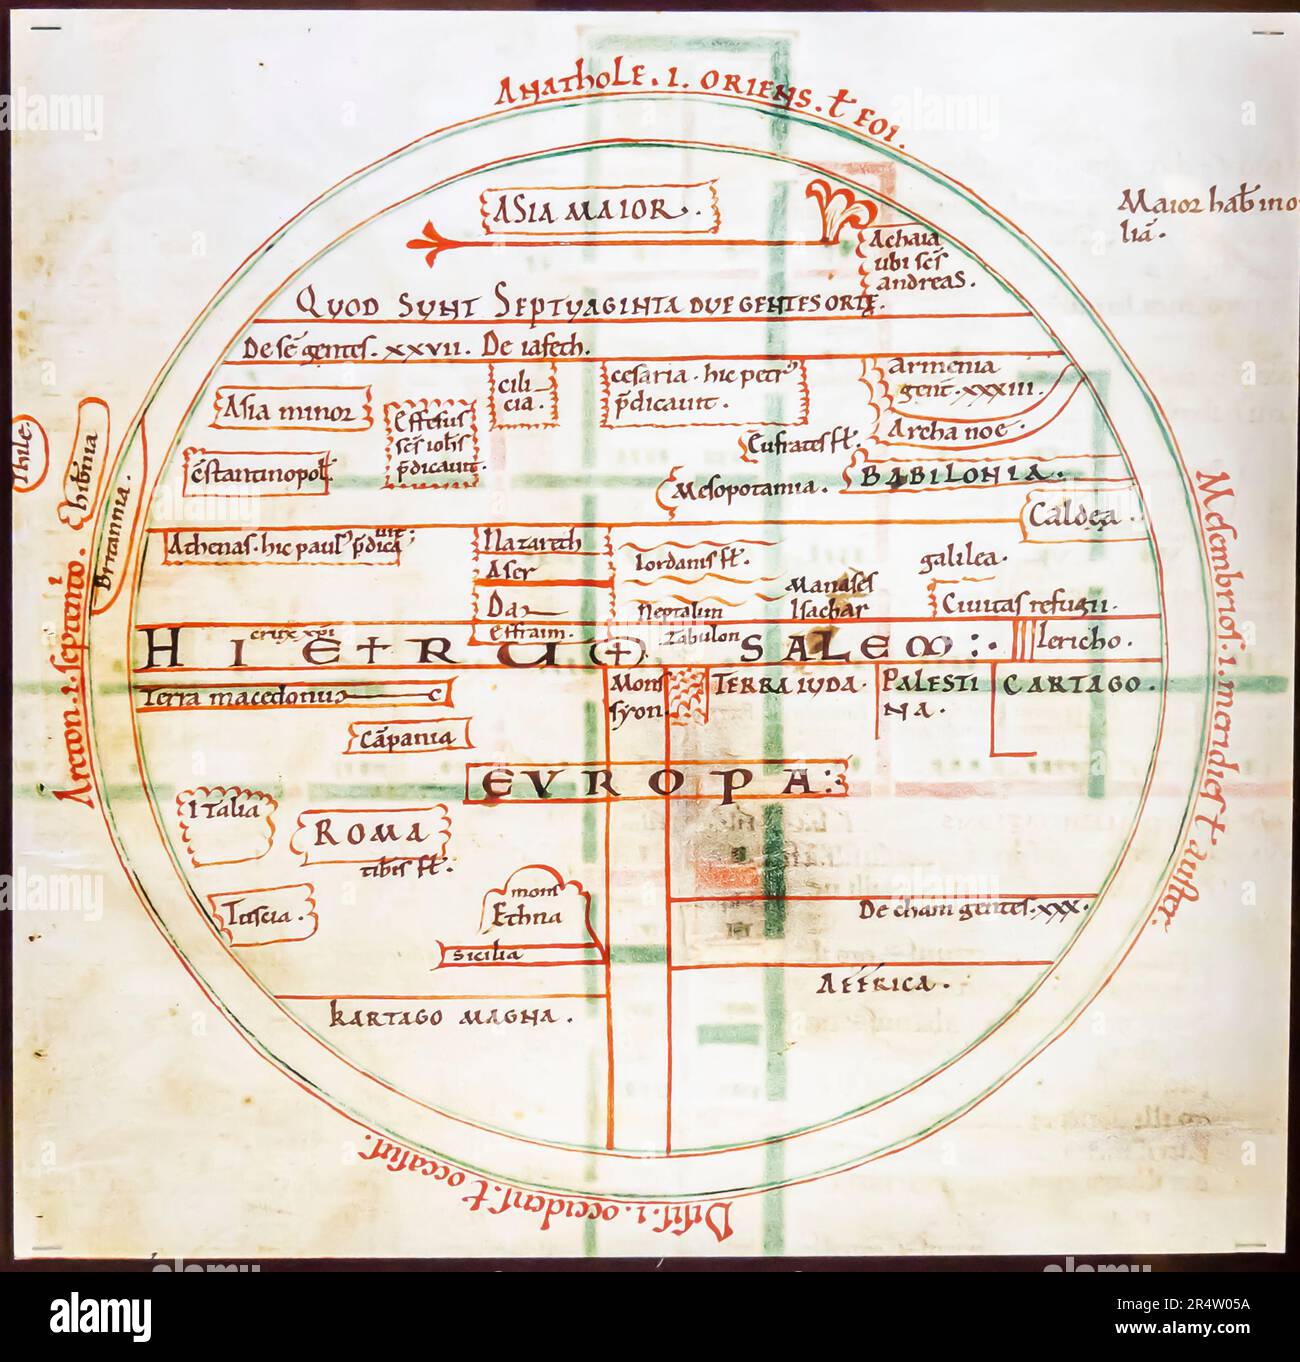 Mappa del mondo di Bede. Inghilterra 1110. Foto Stock